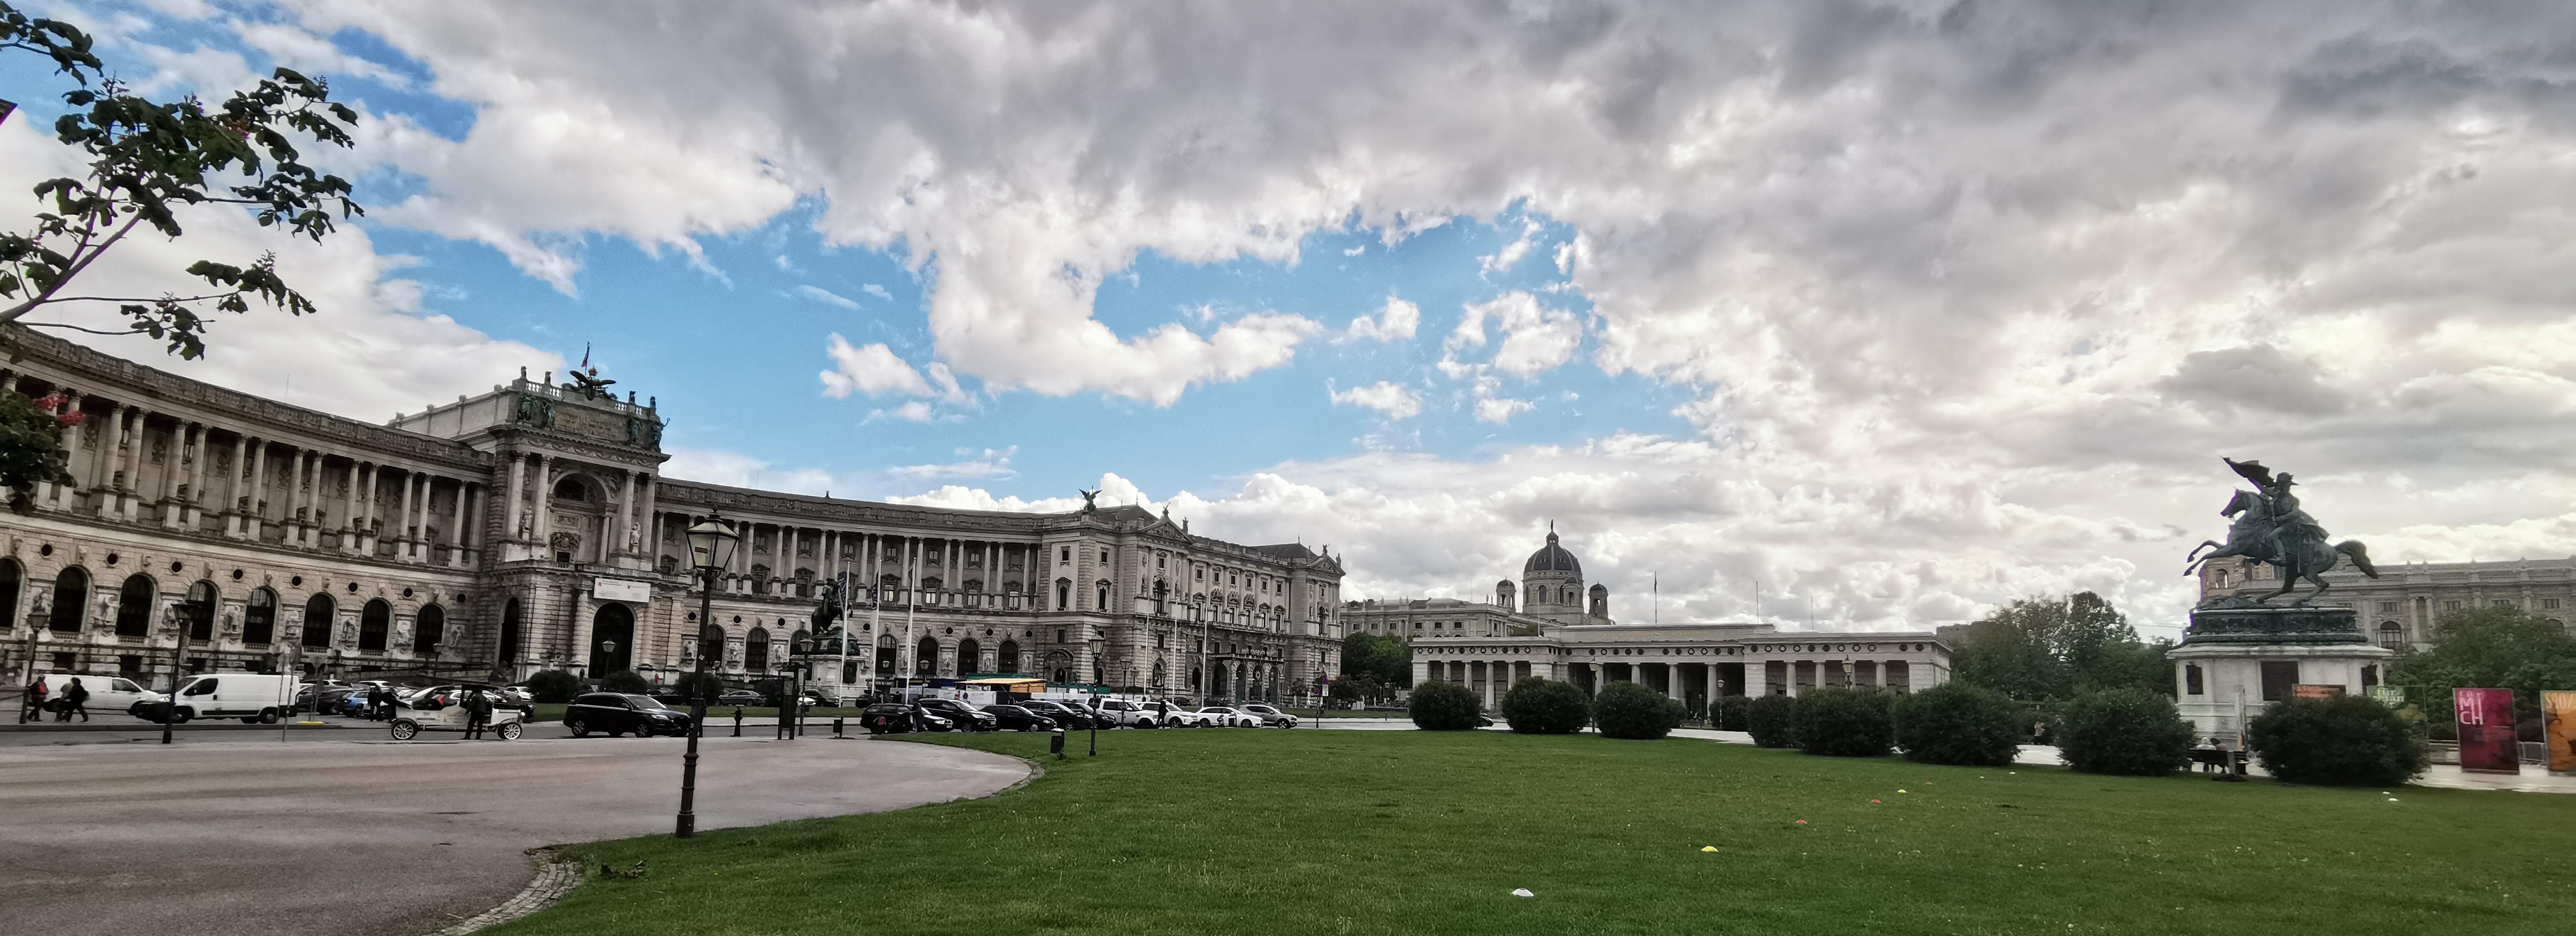 Hofburg, il palazzo imperiale degli Asburgo a Vienna